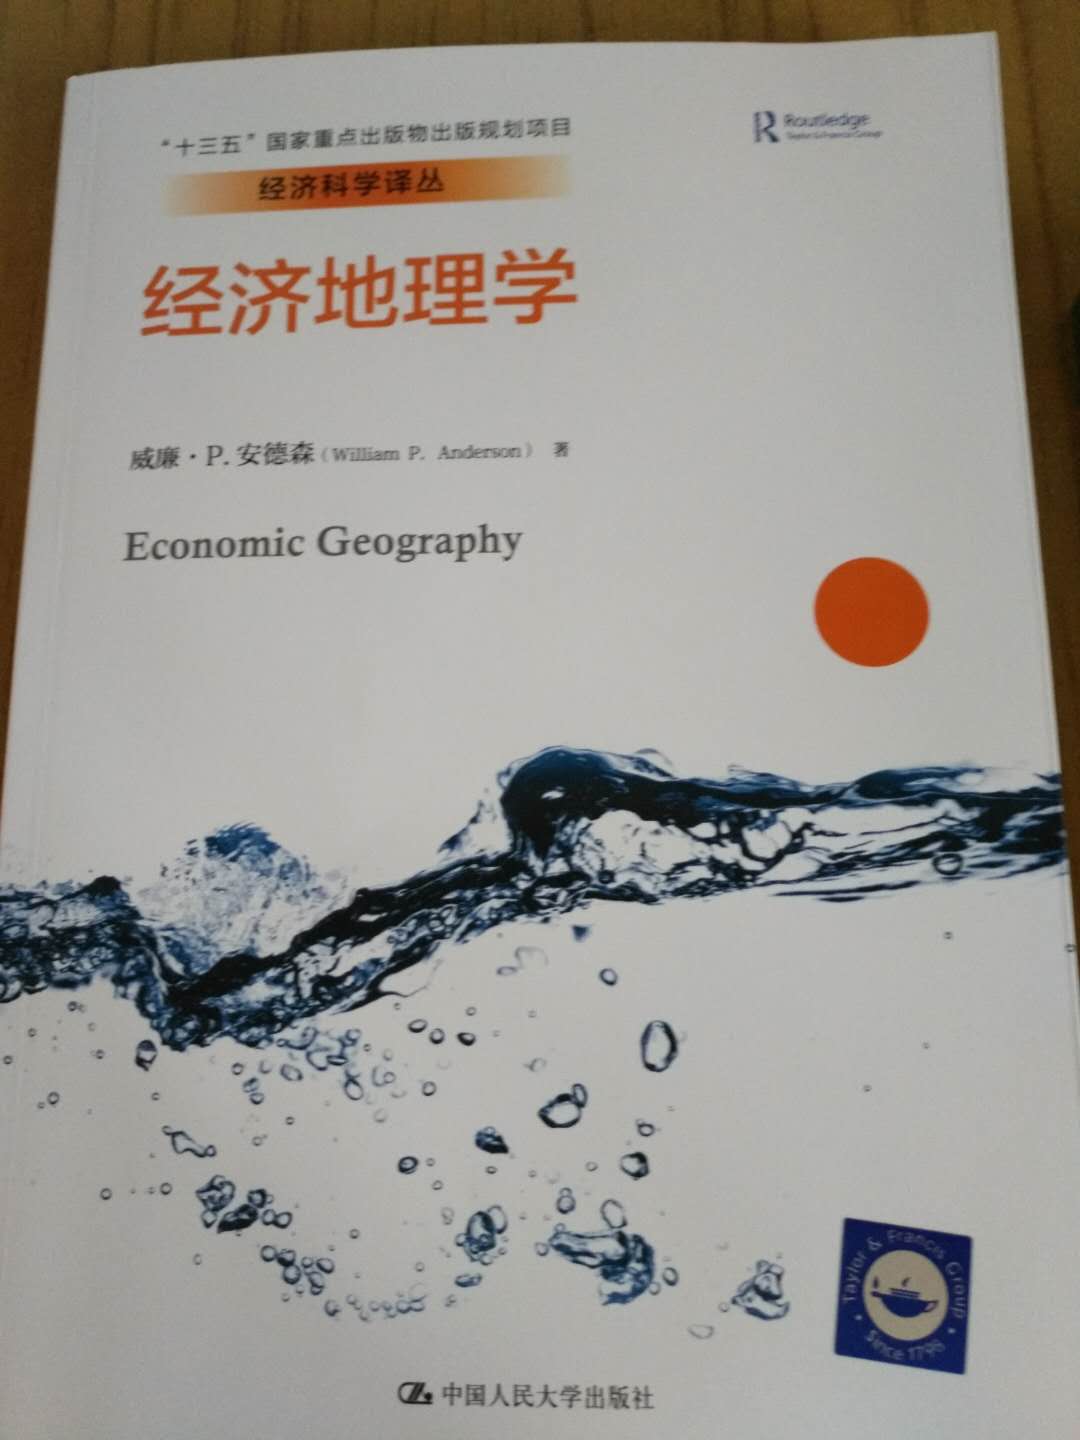 昨晚下的单，今天北京虽然暴雨，但一早就到了，很给力！书的内容很丰富，知识解读很详尽，很值得一看。